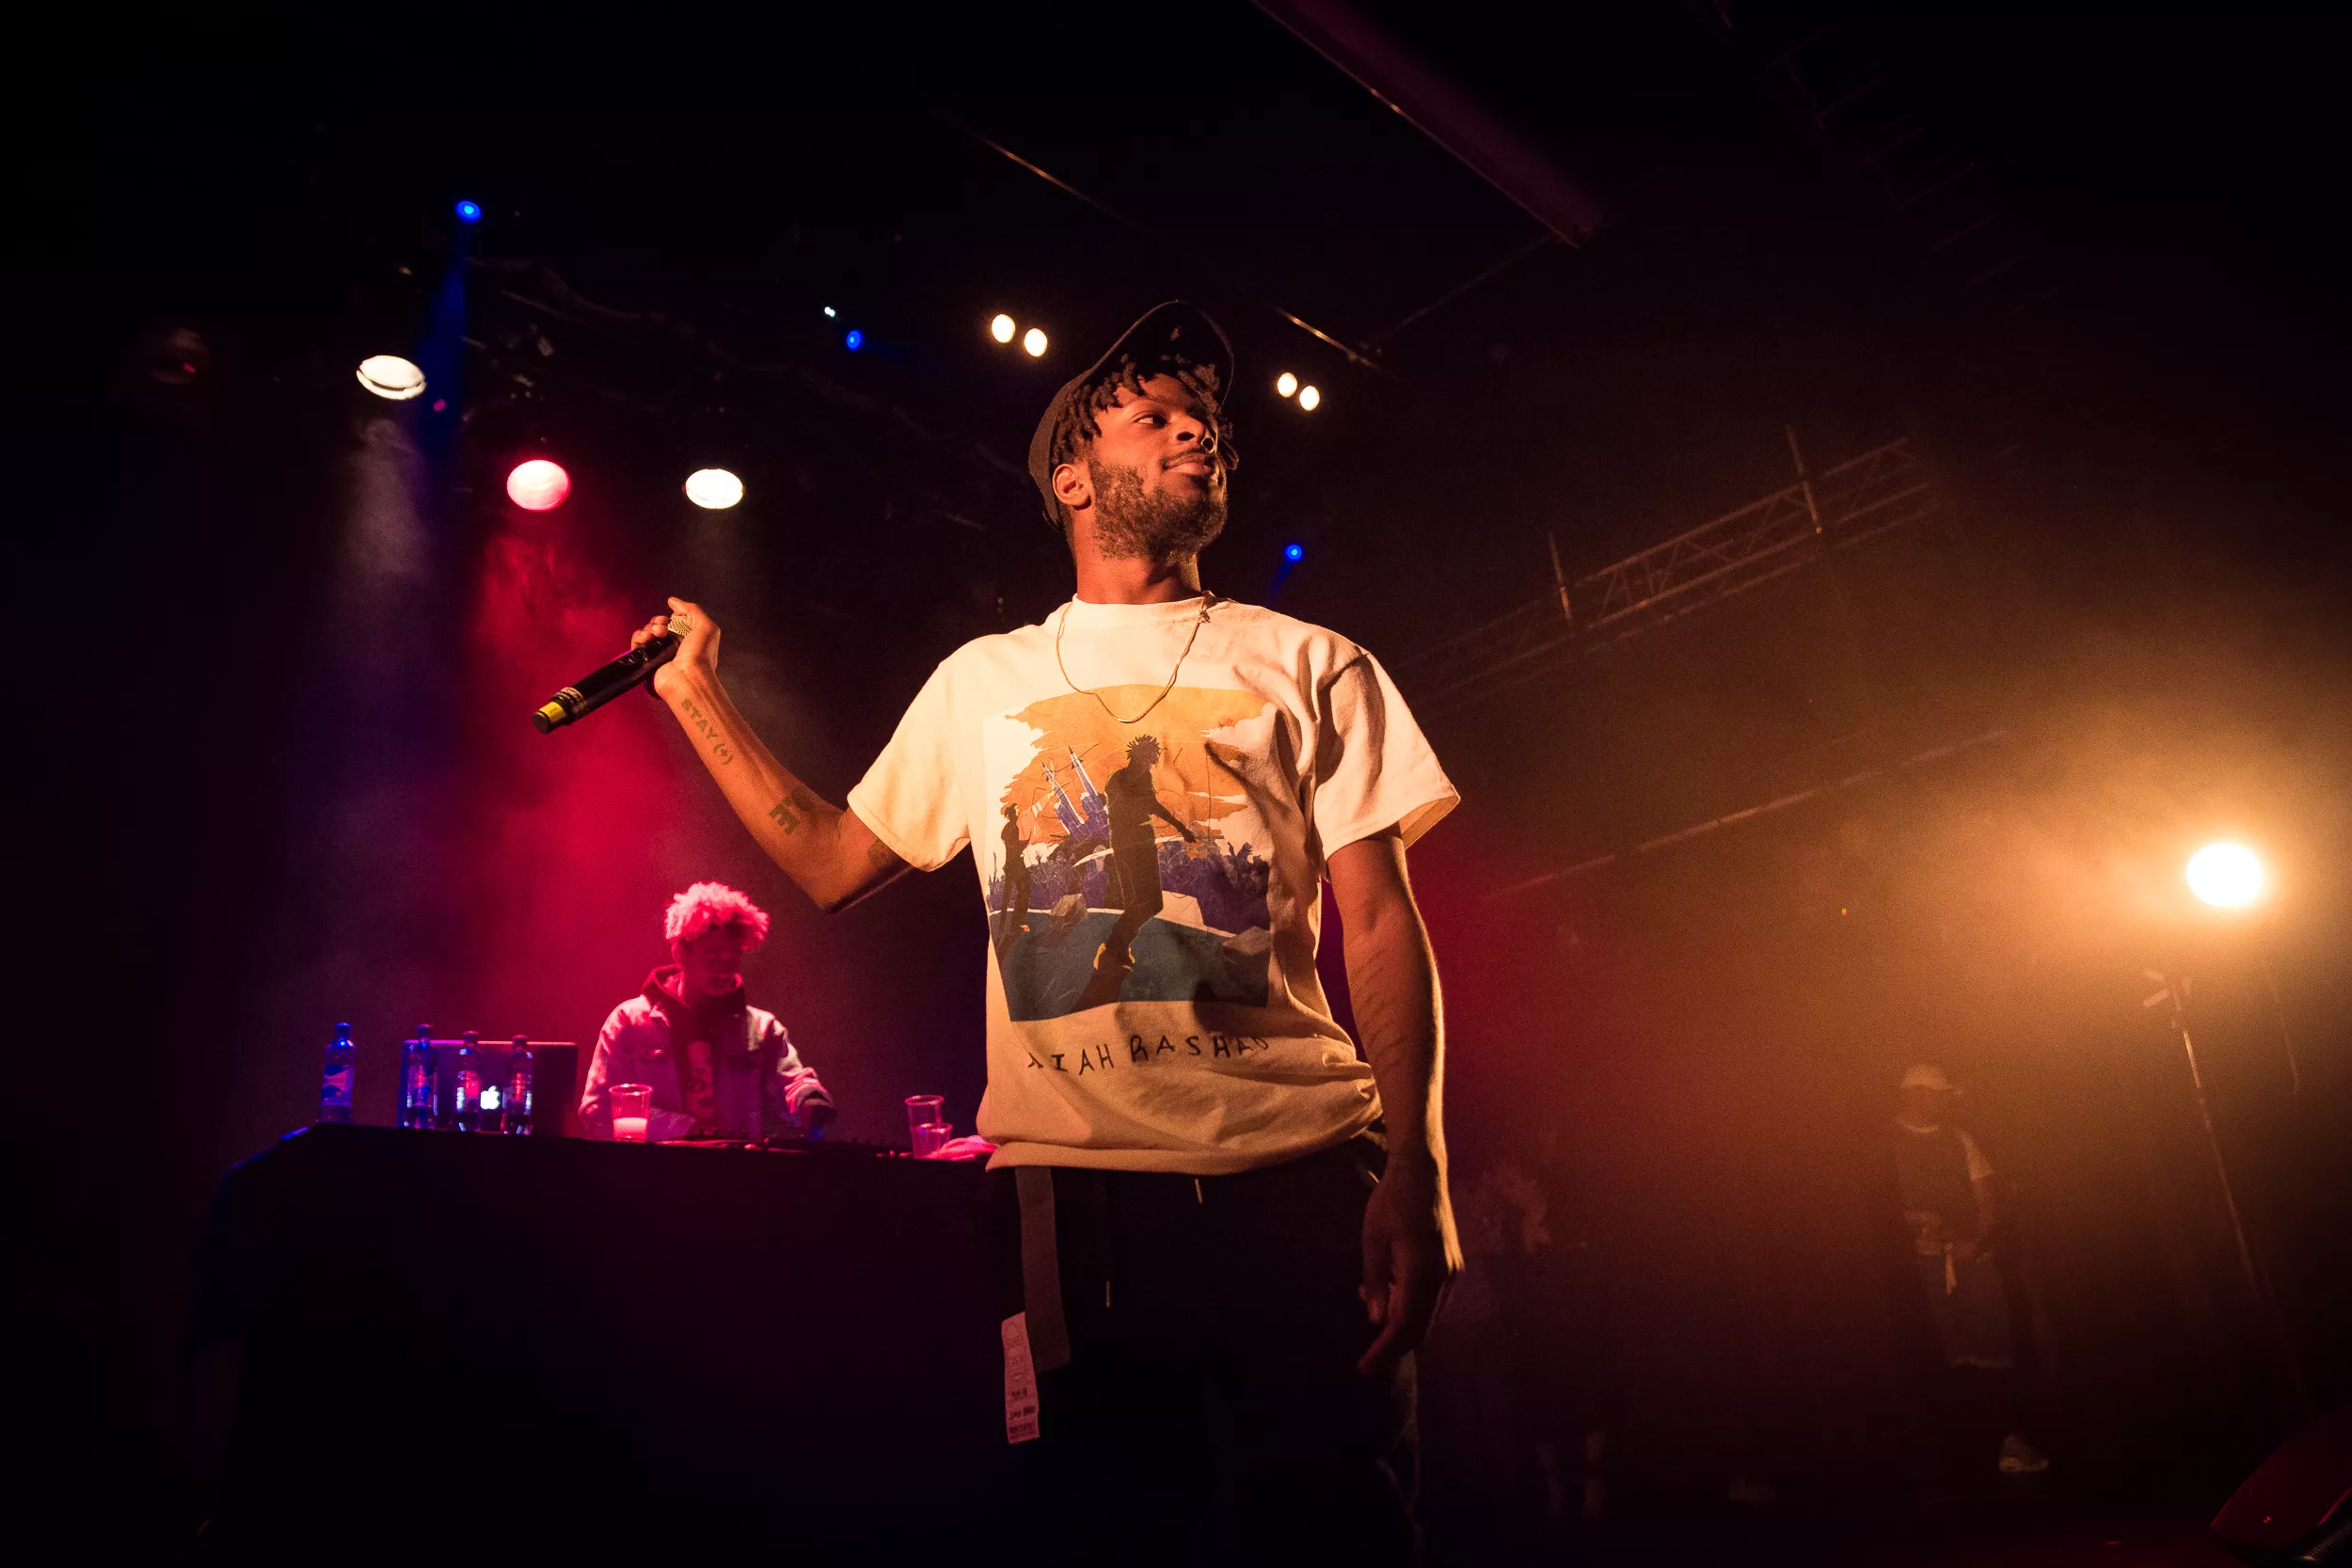 TDE-rapperen Isaiah Rashad bekrefter nytt album til sommeren